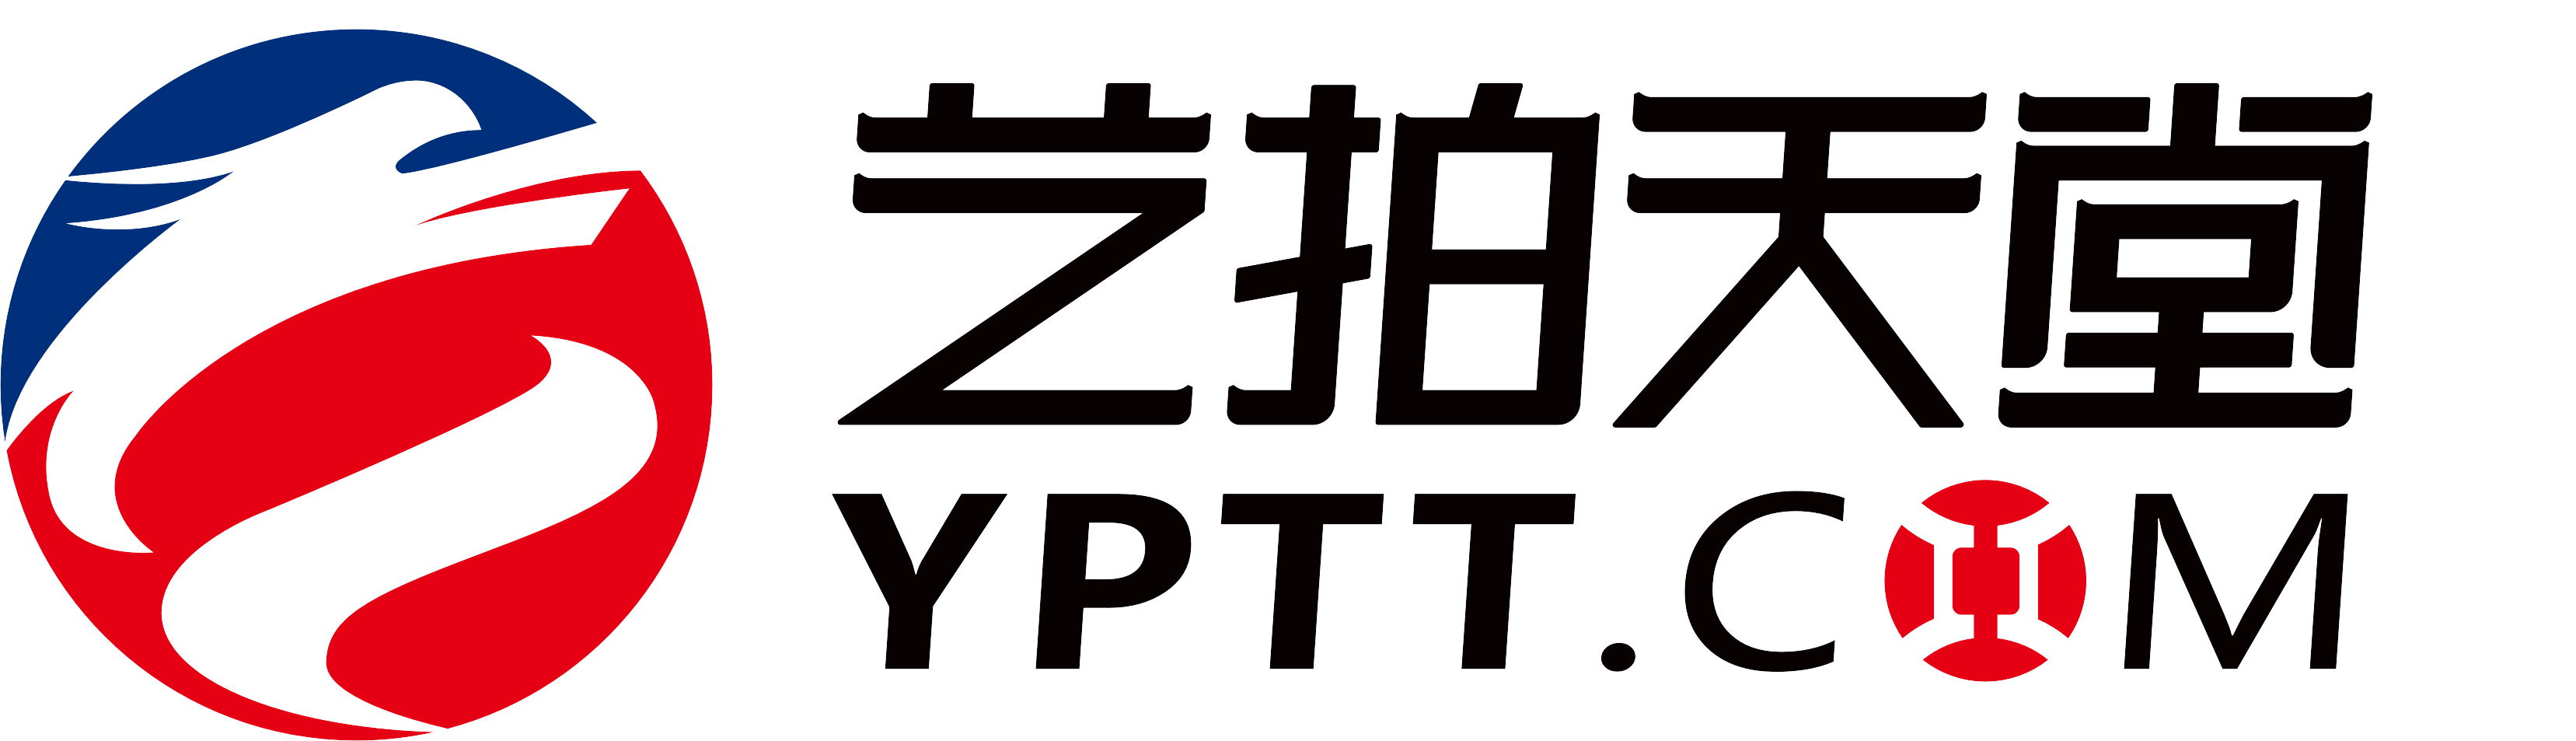 YPTT logo.PNG